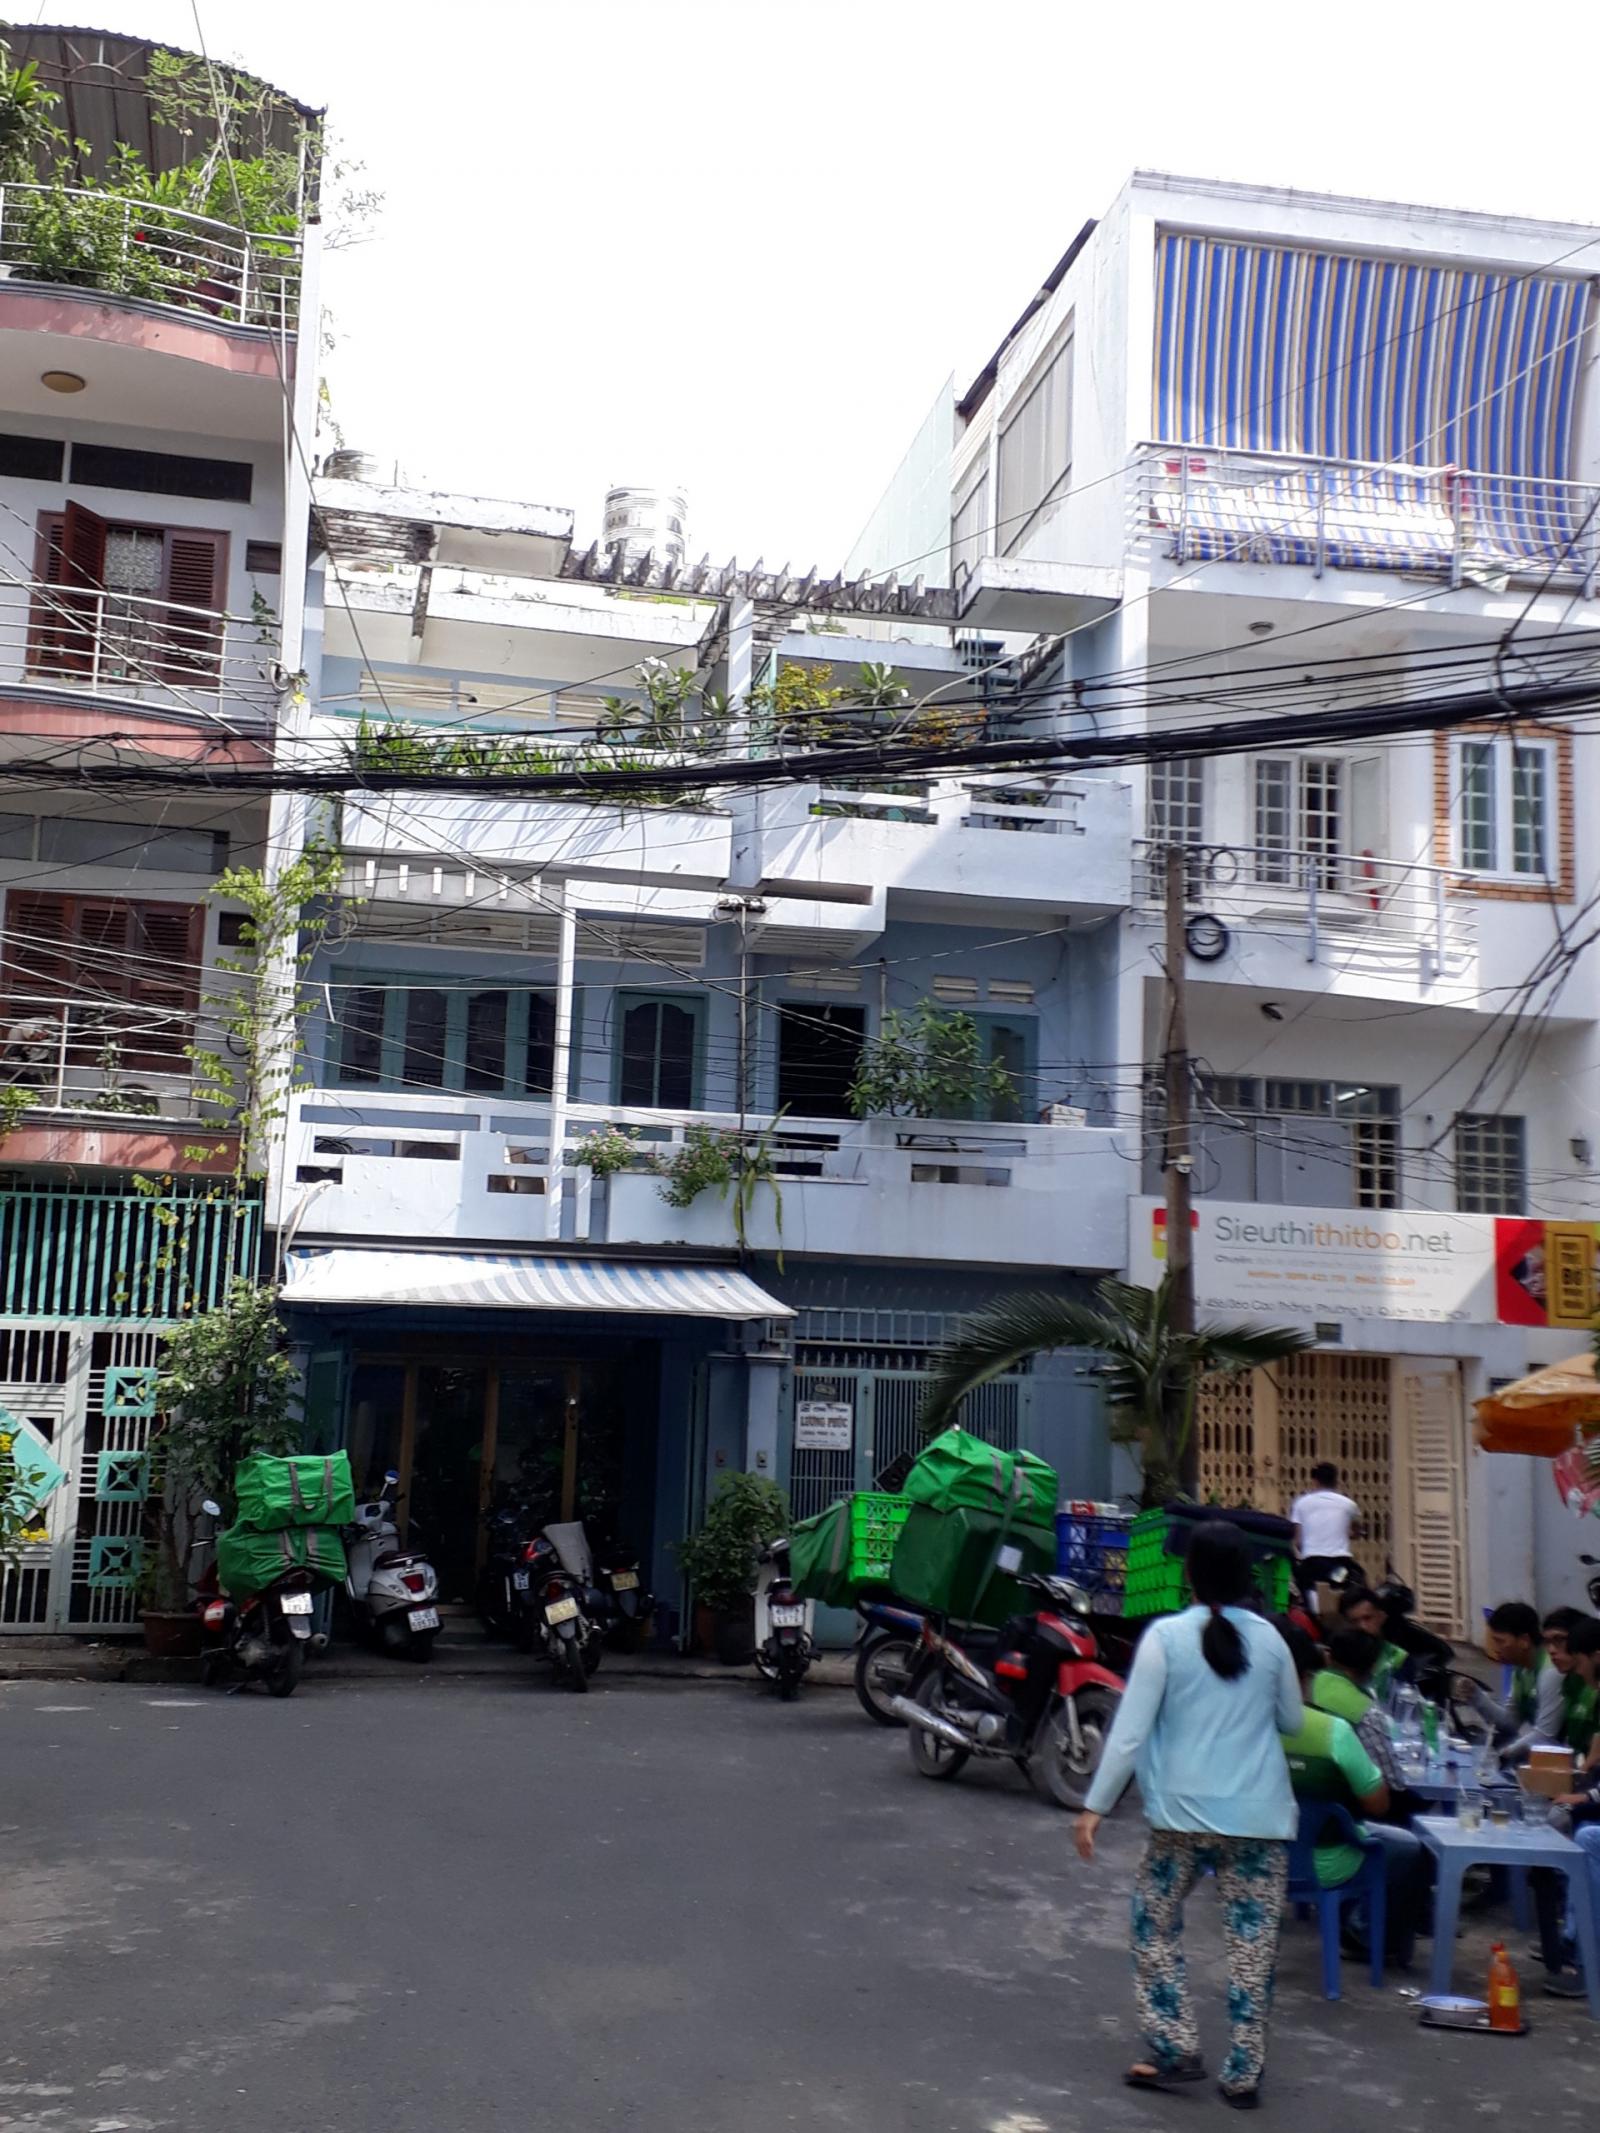 Hot! Bán nhà mặt tiền đường Võ Văn Kiệt, quận 5, DT: 4,2 x 17m, 3 lầu mới, chỉ 15,5 tỷ